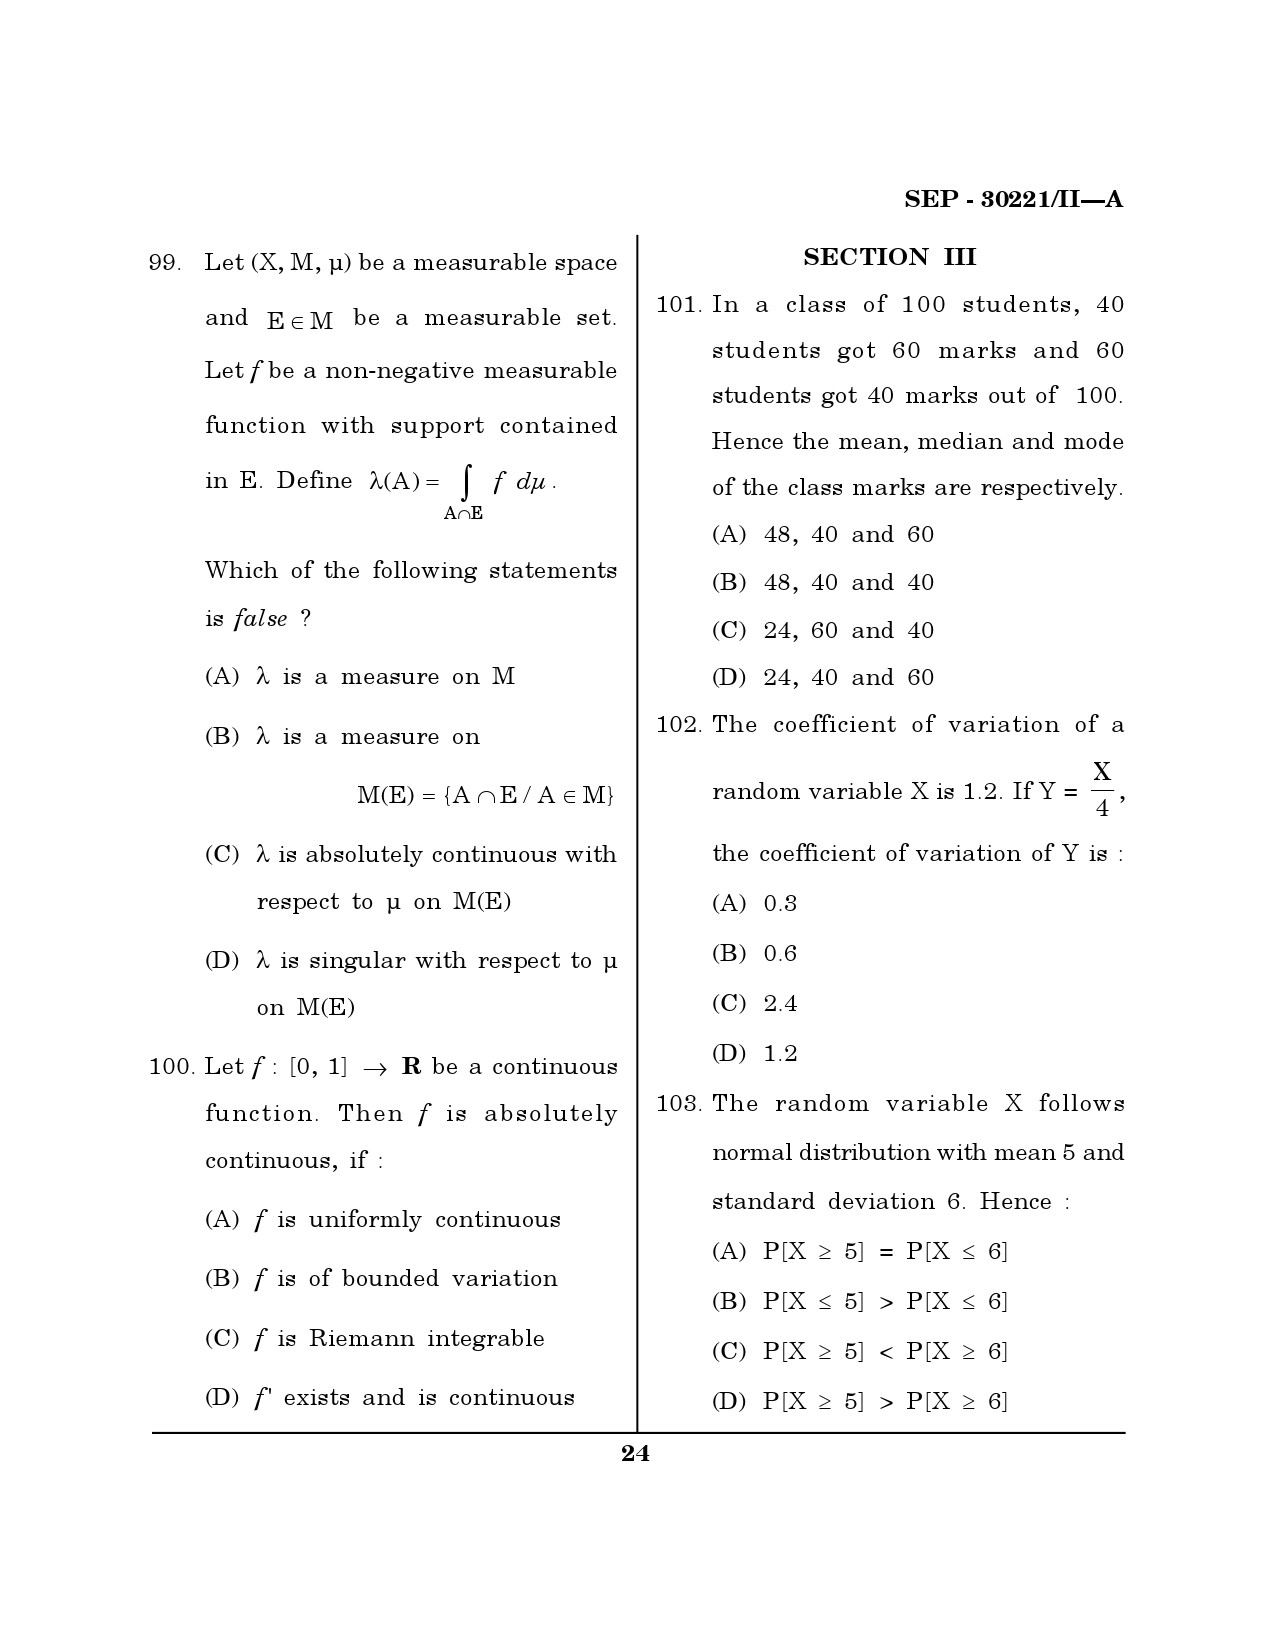 Maharashtra SET Mathematical Sciences Exam Question Paper September 2021 23